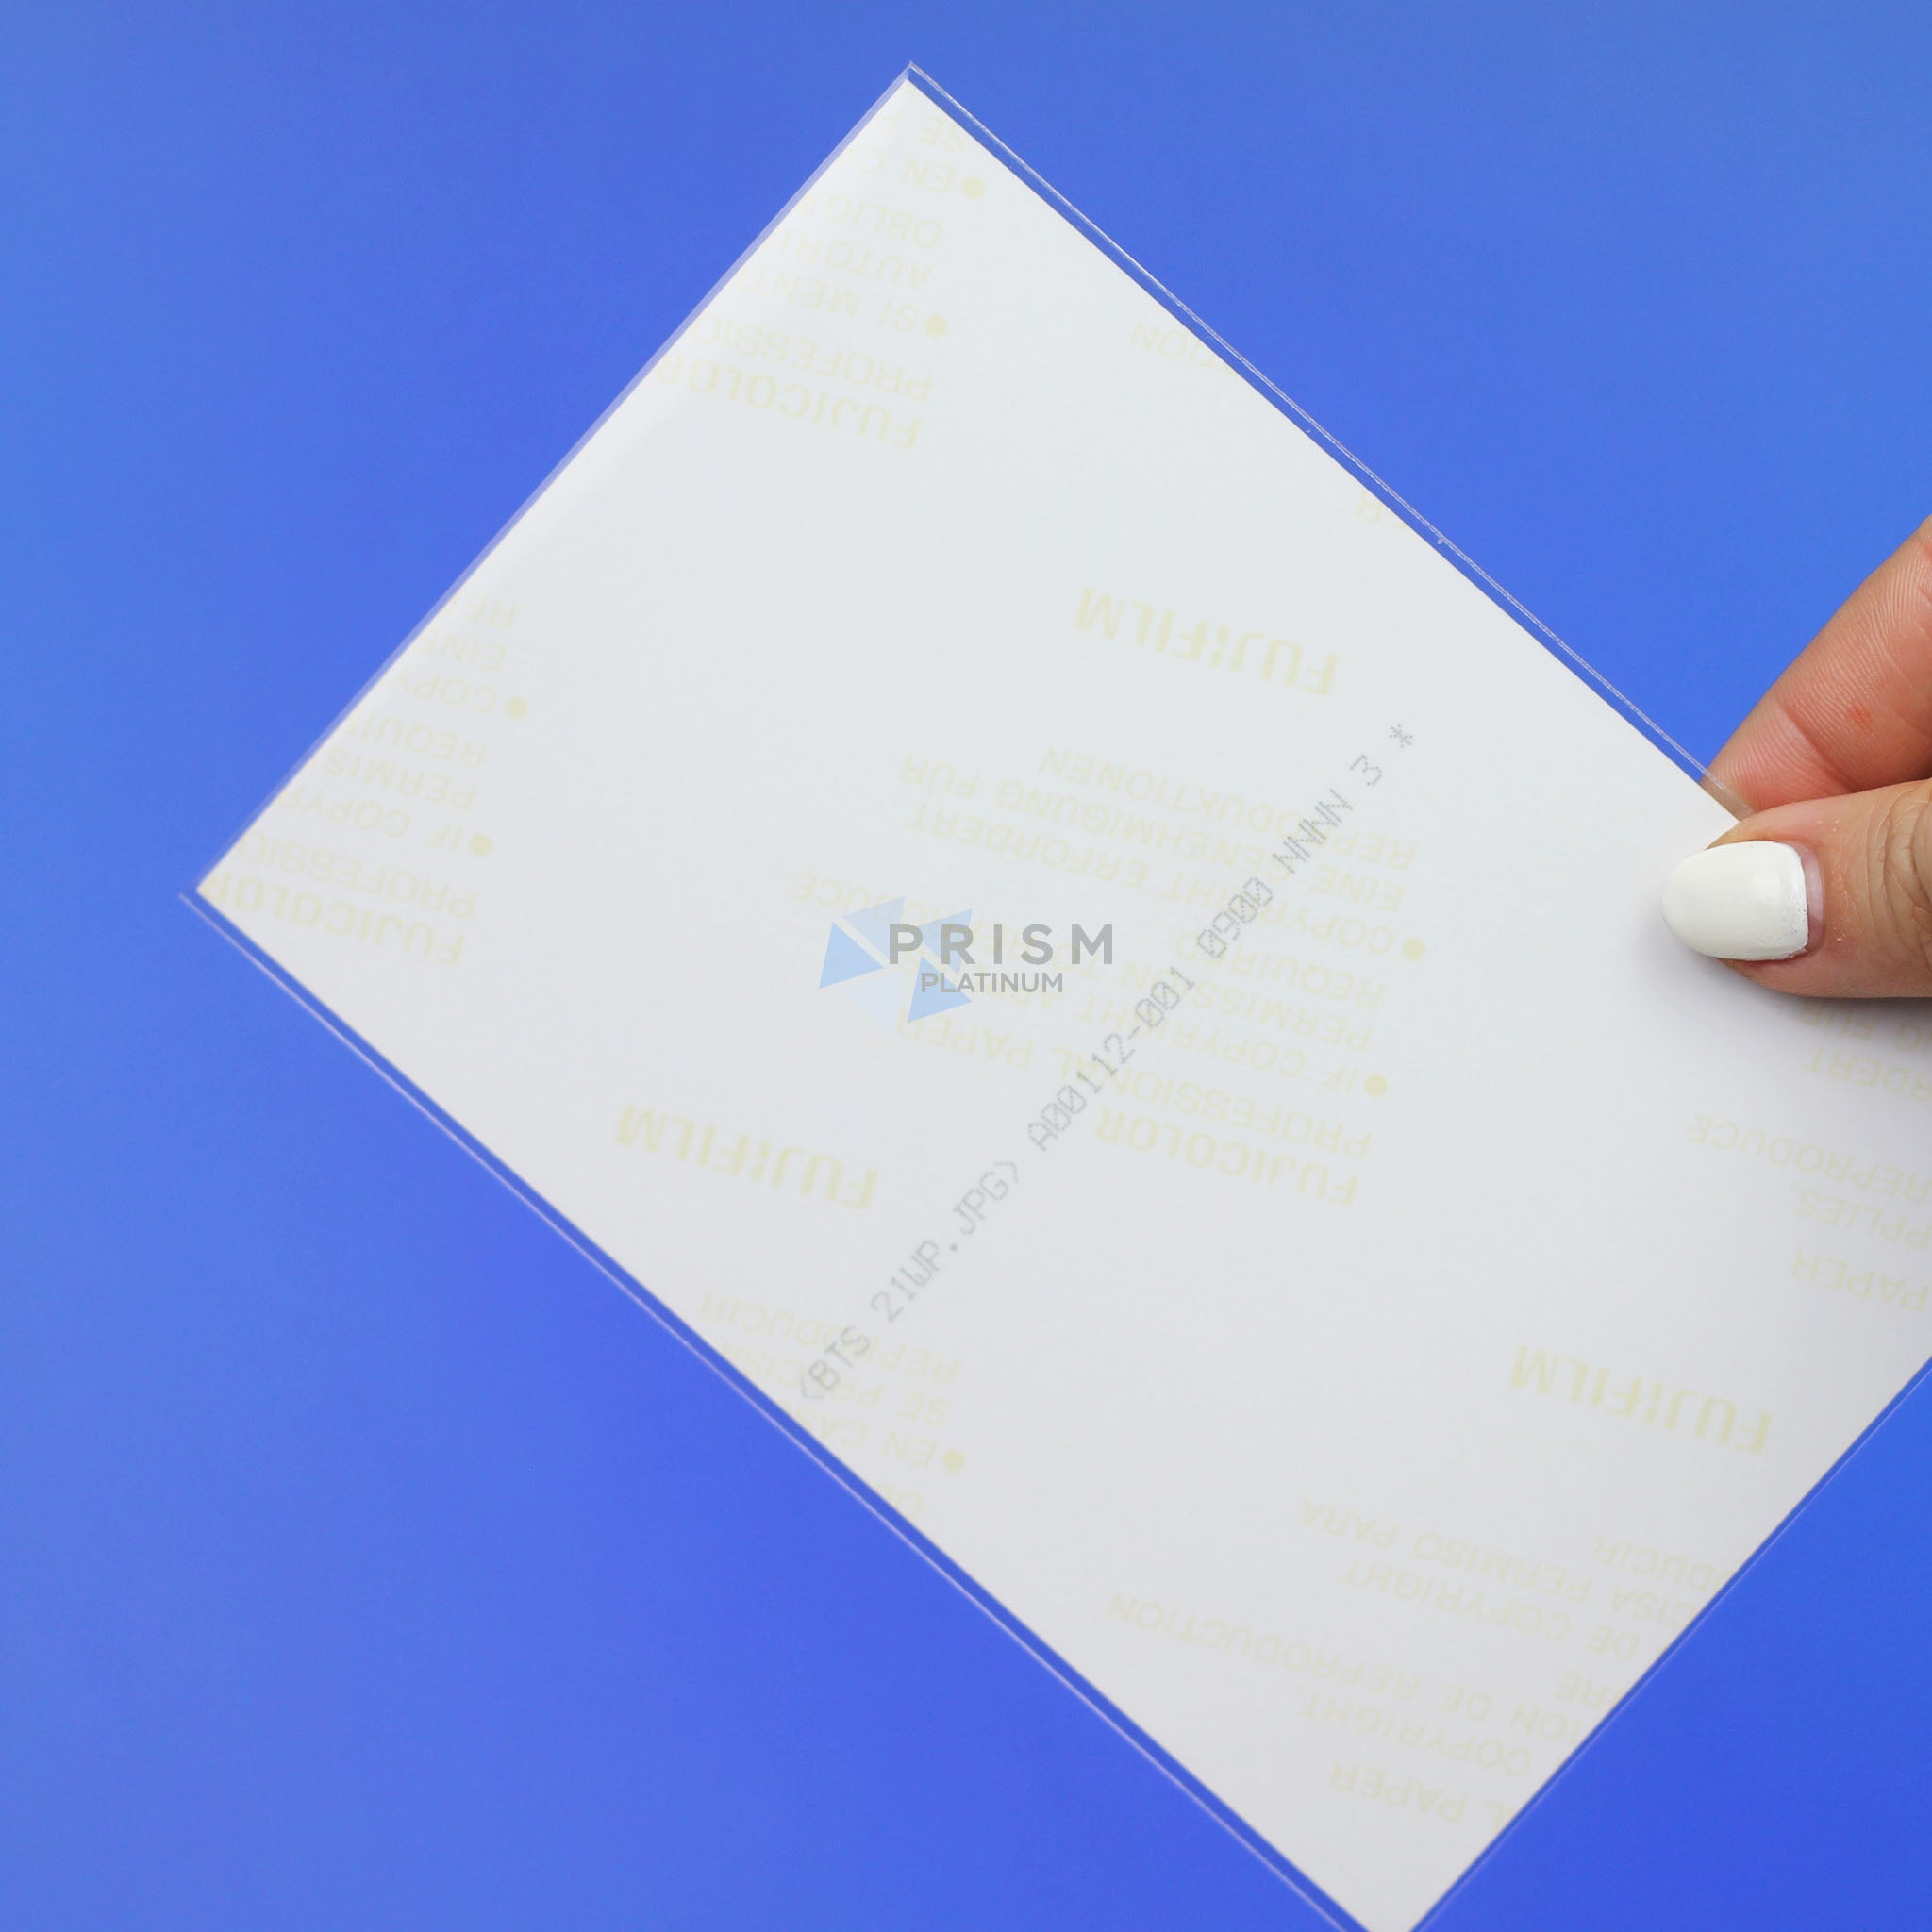 Premium Mini Postcard Sleeves - 25 Pack, Prism Platinum